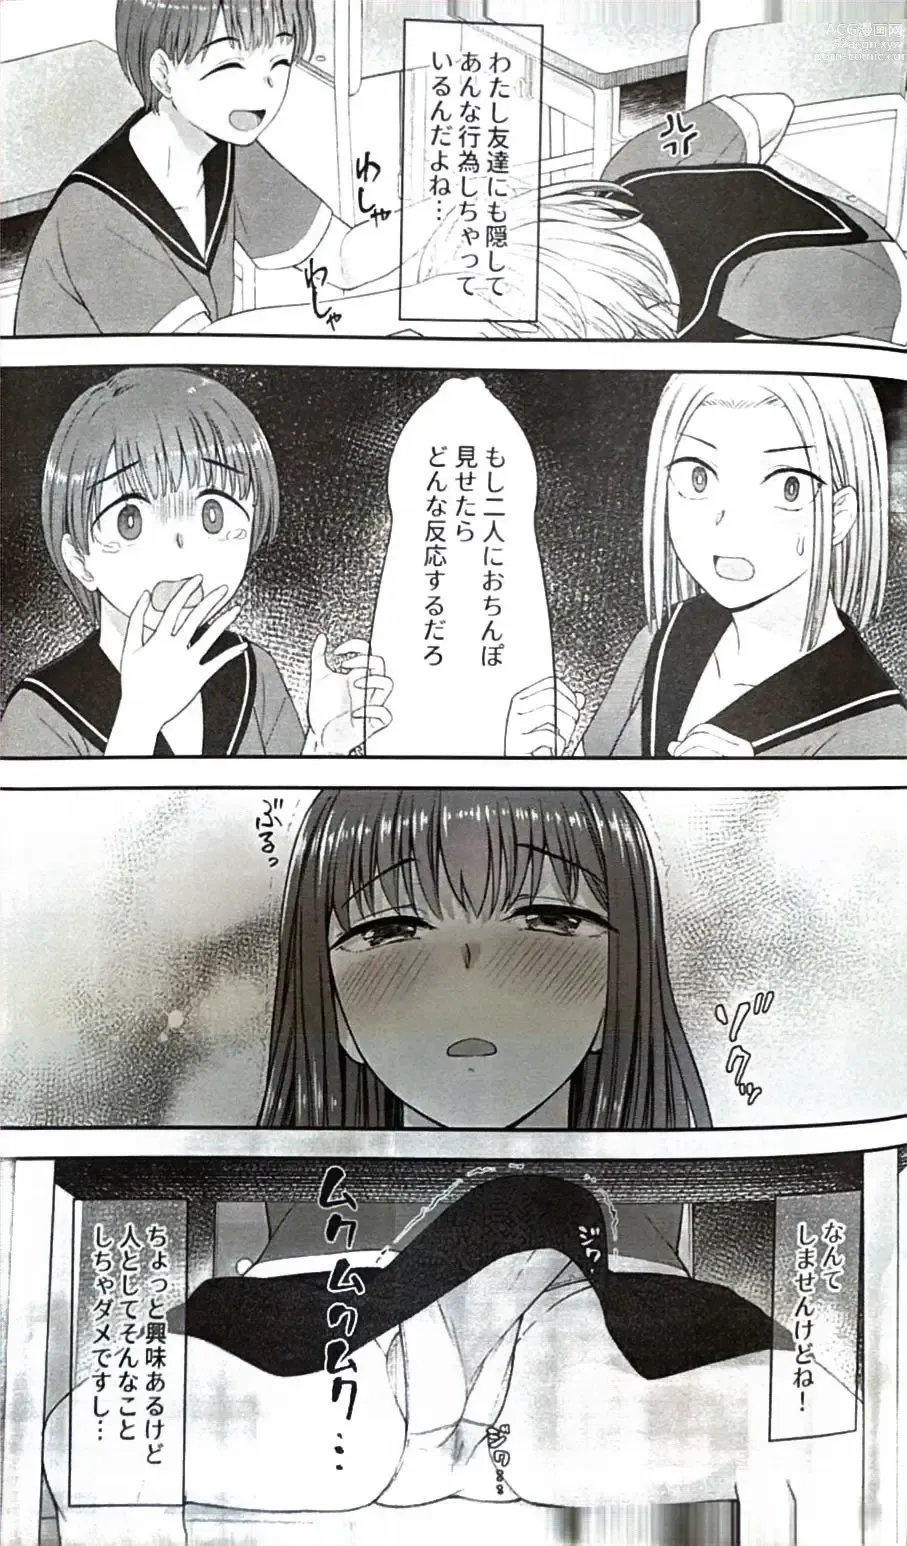 Page 28 of doujinshi Danseiki Roshutsu Jidori-han no Shoutai wa Kanojo dake ga Shitteiru.